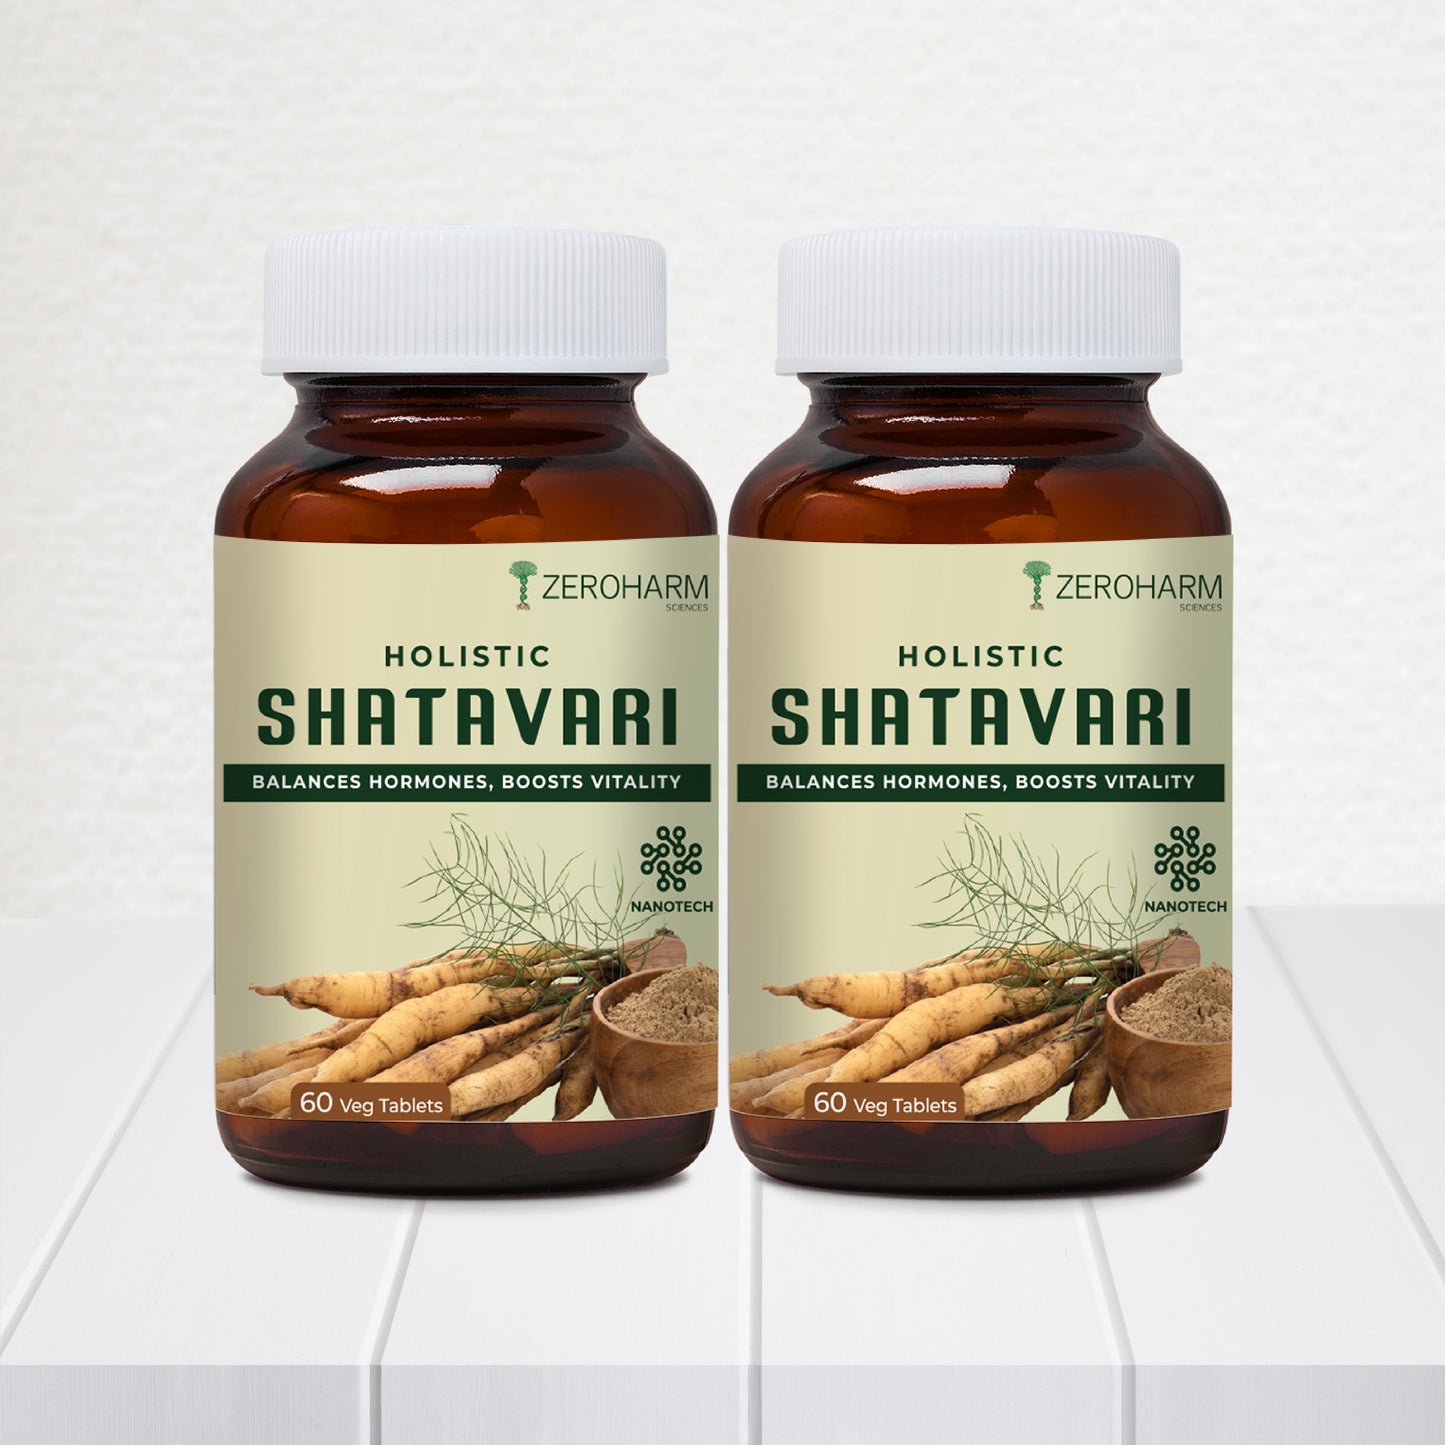 Holistic Shatavari tablets